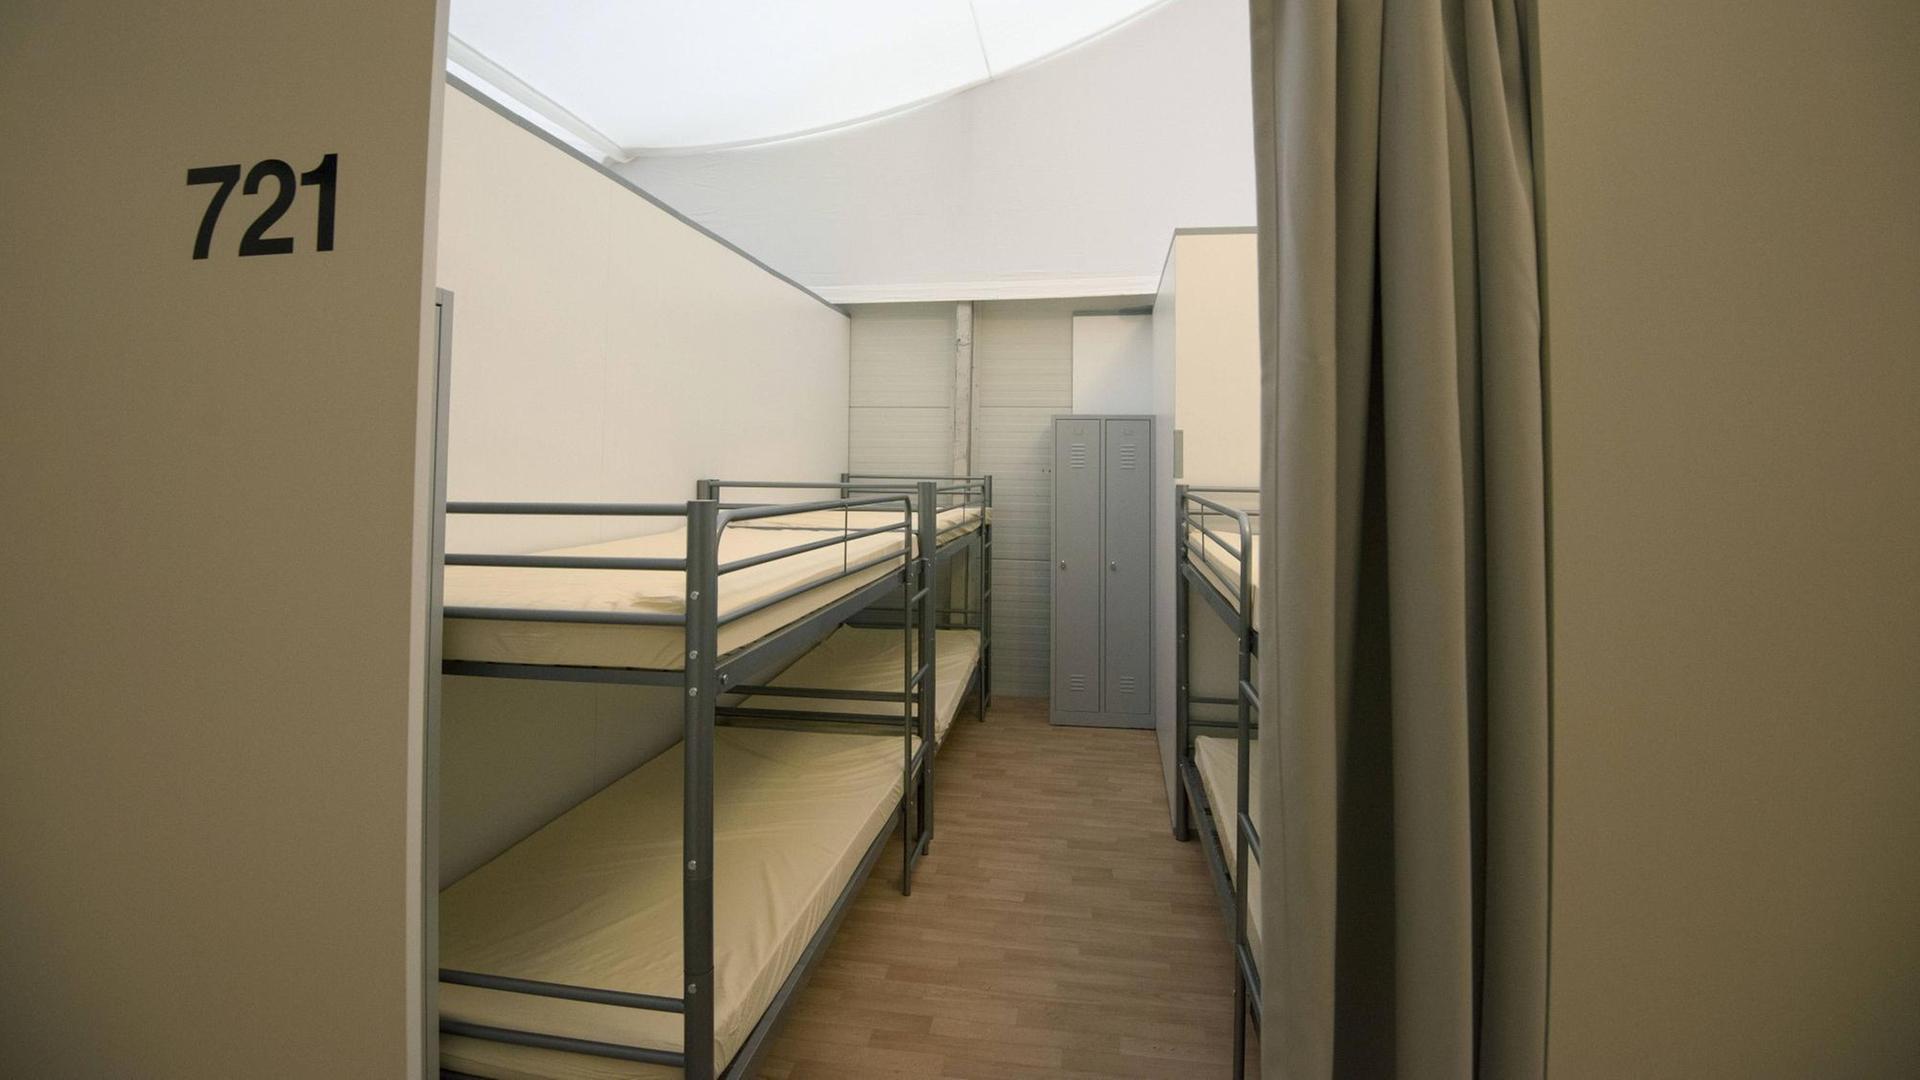 Schlafraum mit Doppelstockbetten in einer neu errichteten Leichtbauhalle in der Hessischen Erstaufnahmeeinrichtung fuer Fluechtlinge (HEAE) in Giessen